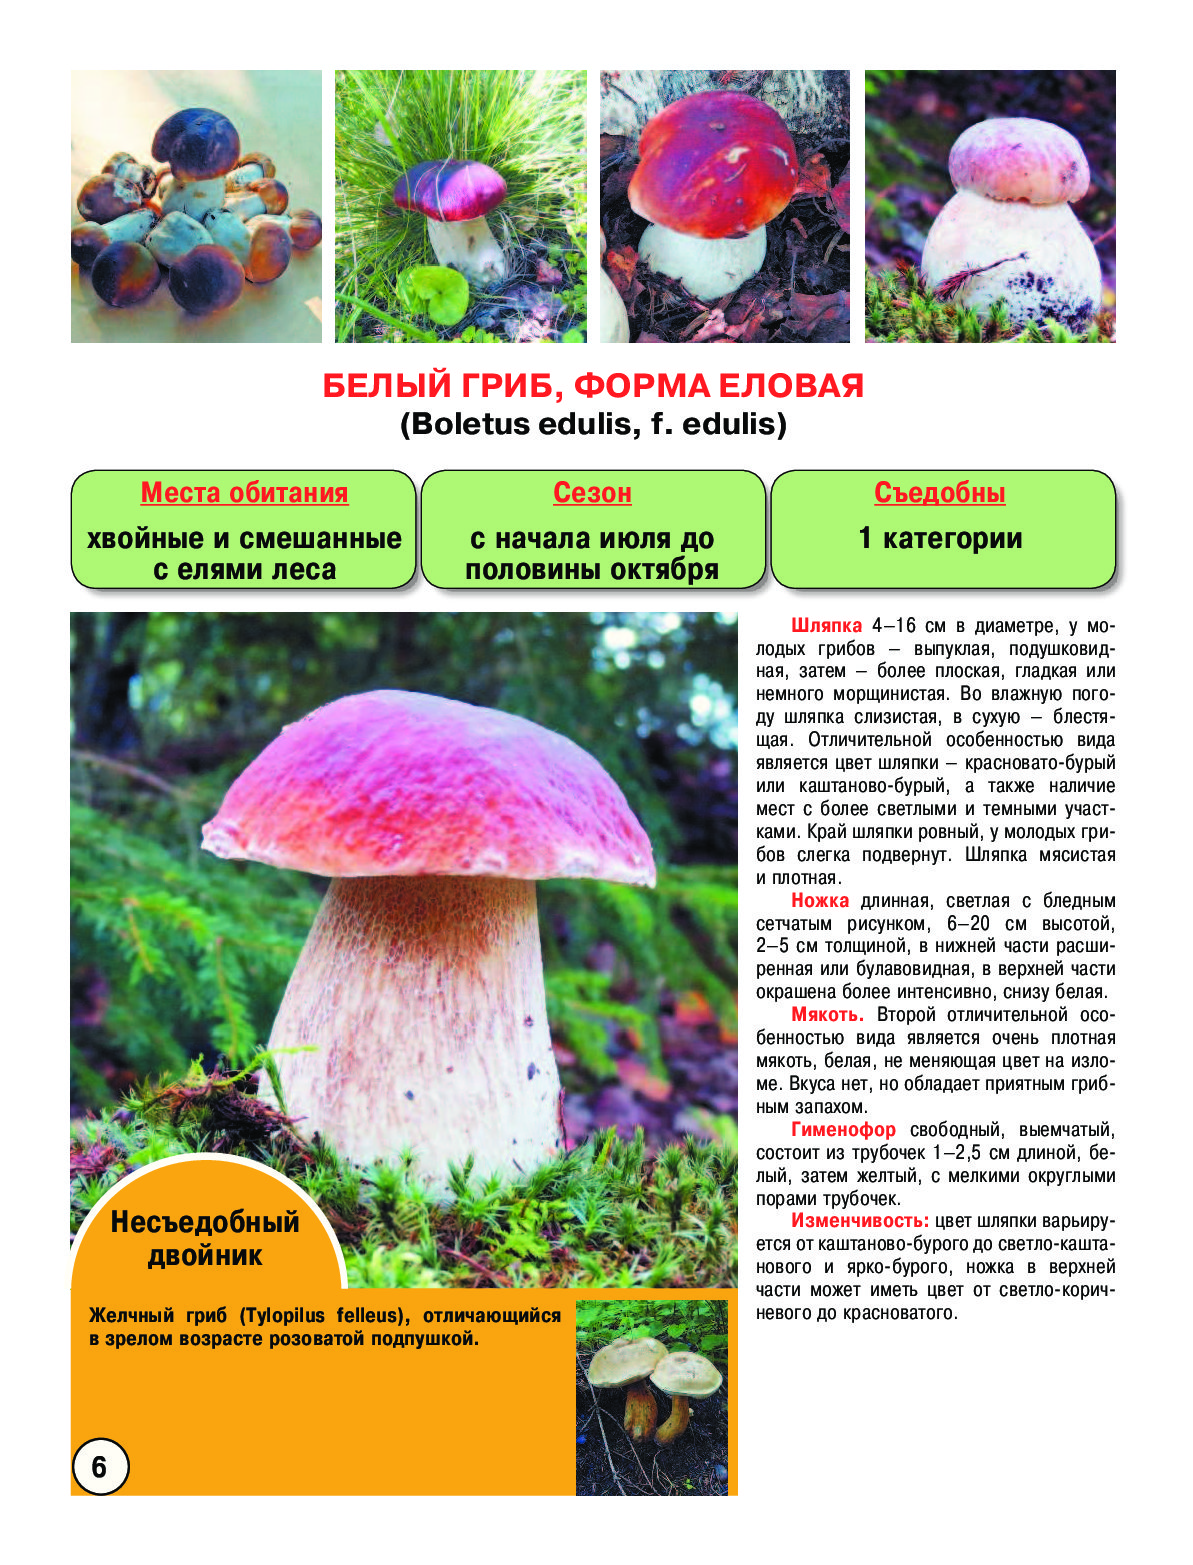 съедобные грибы виды и их фото